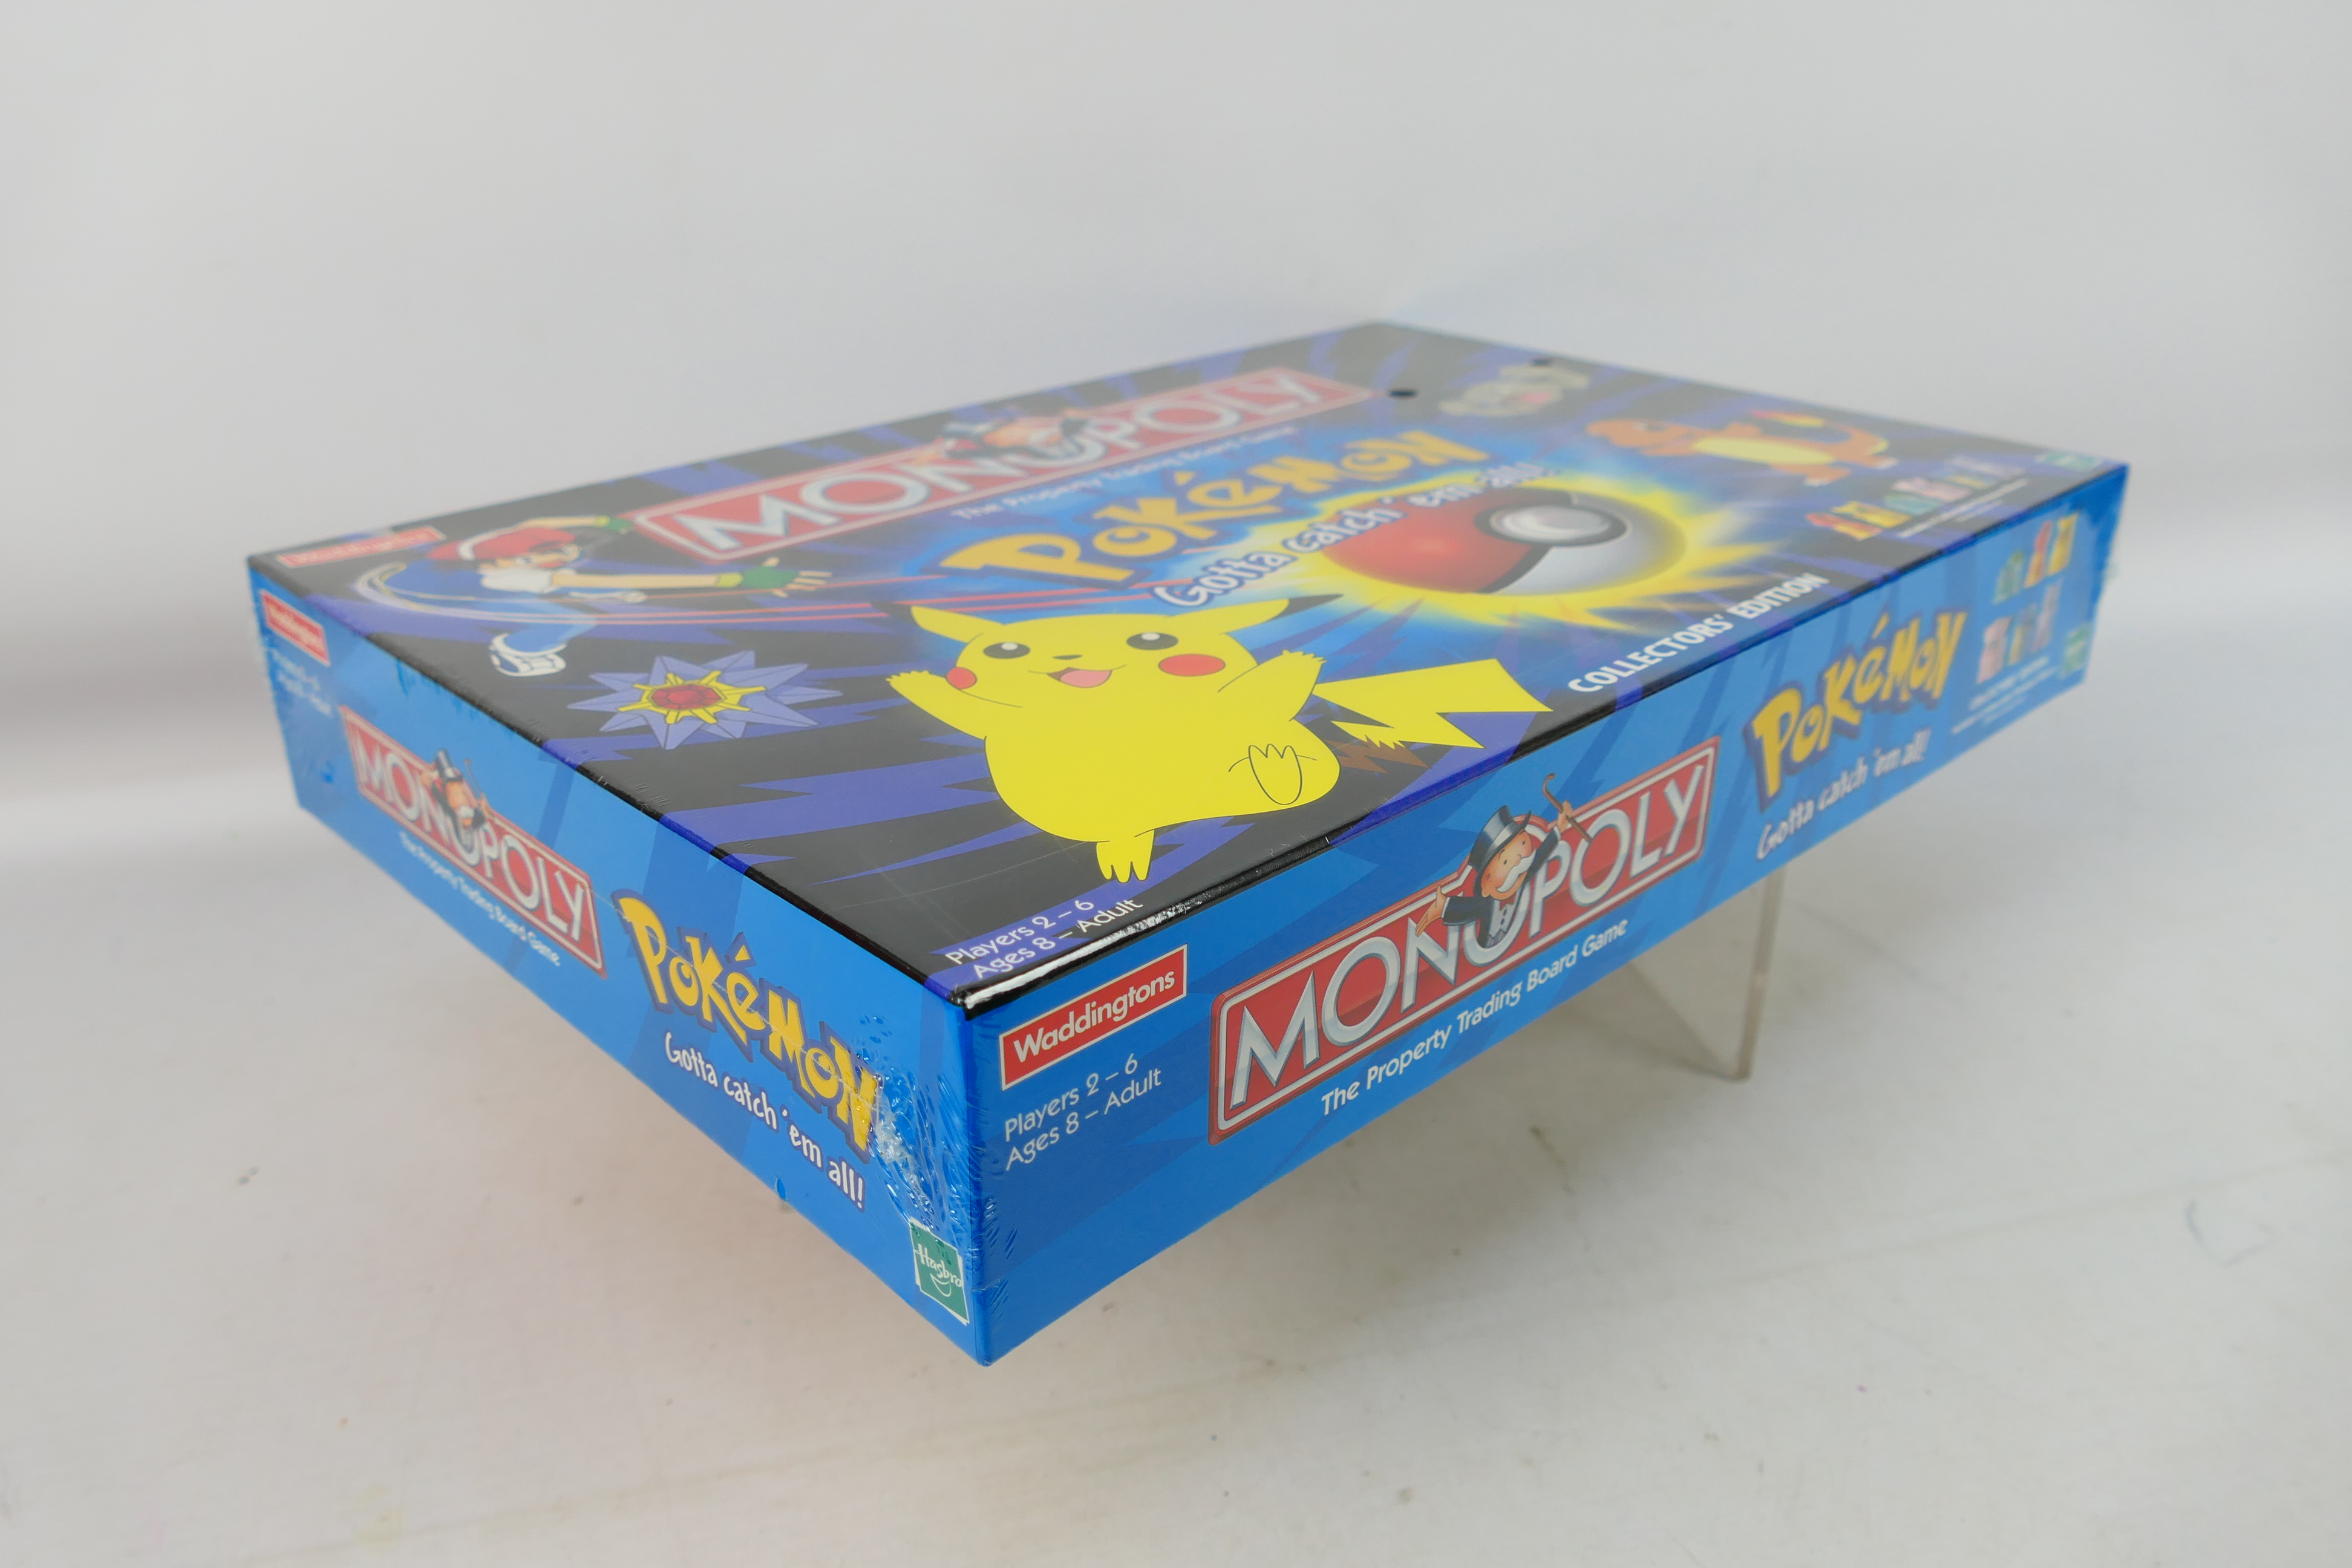 Hasbro - Monopoly - An unopened Pokemon - Image 3 of 3